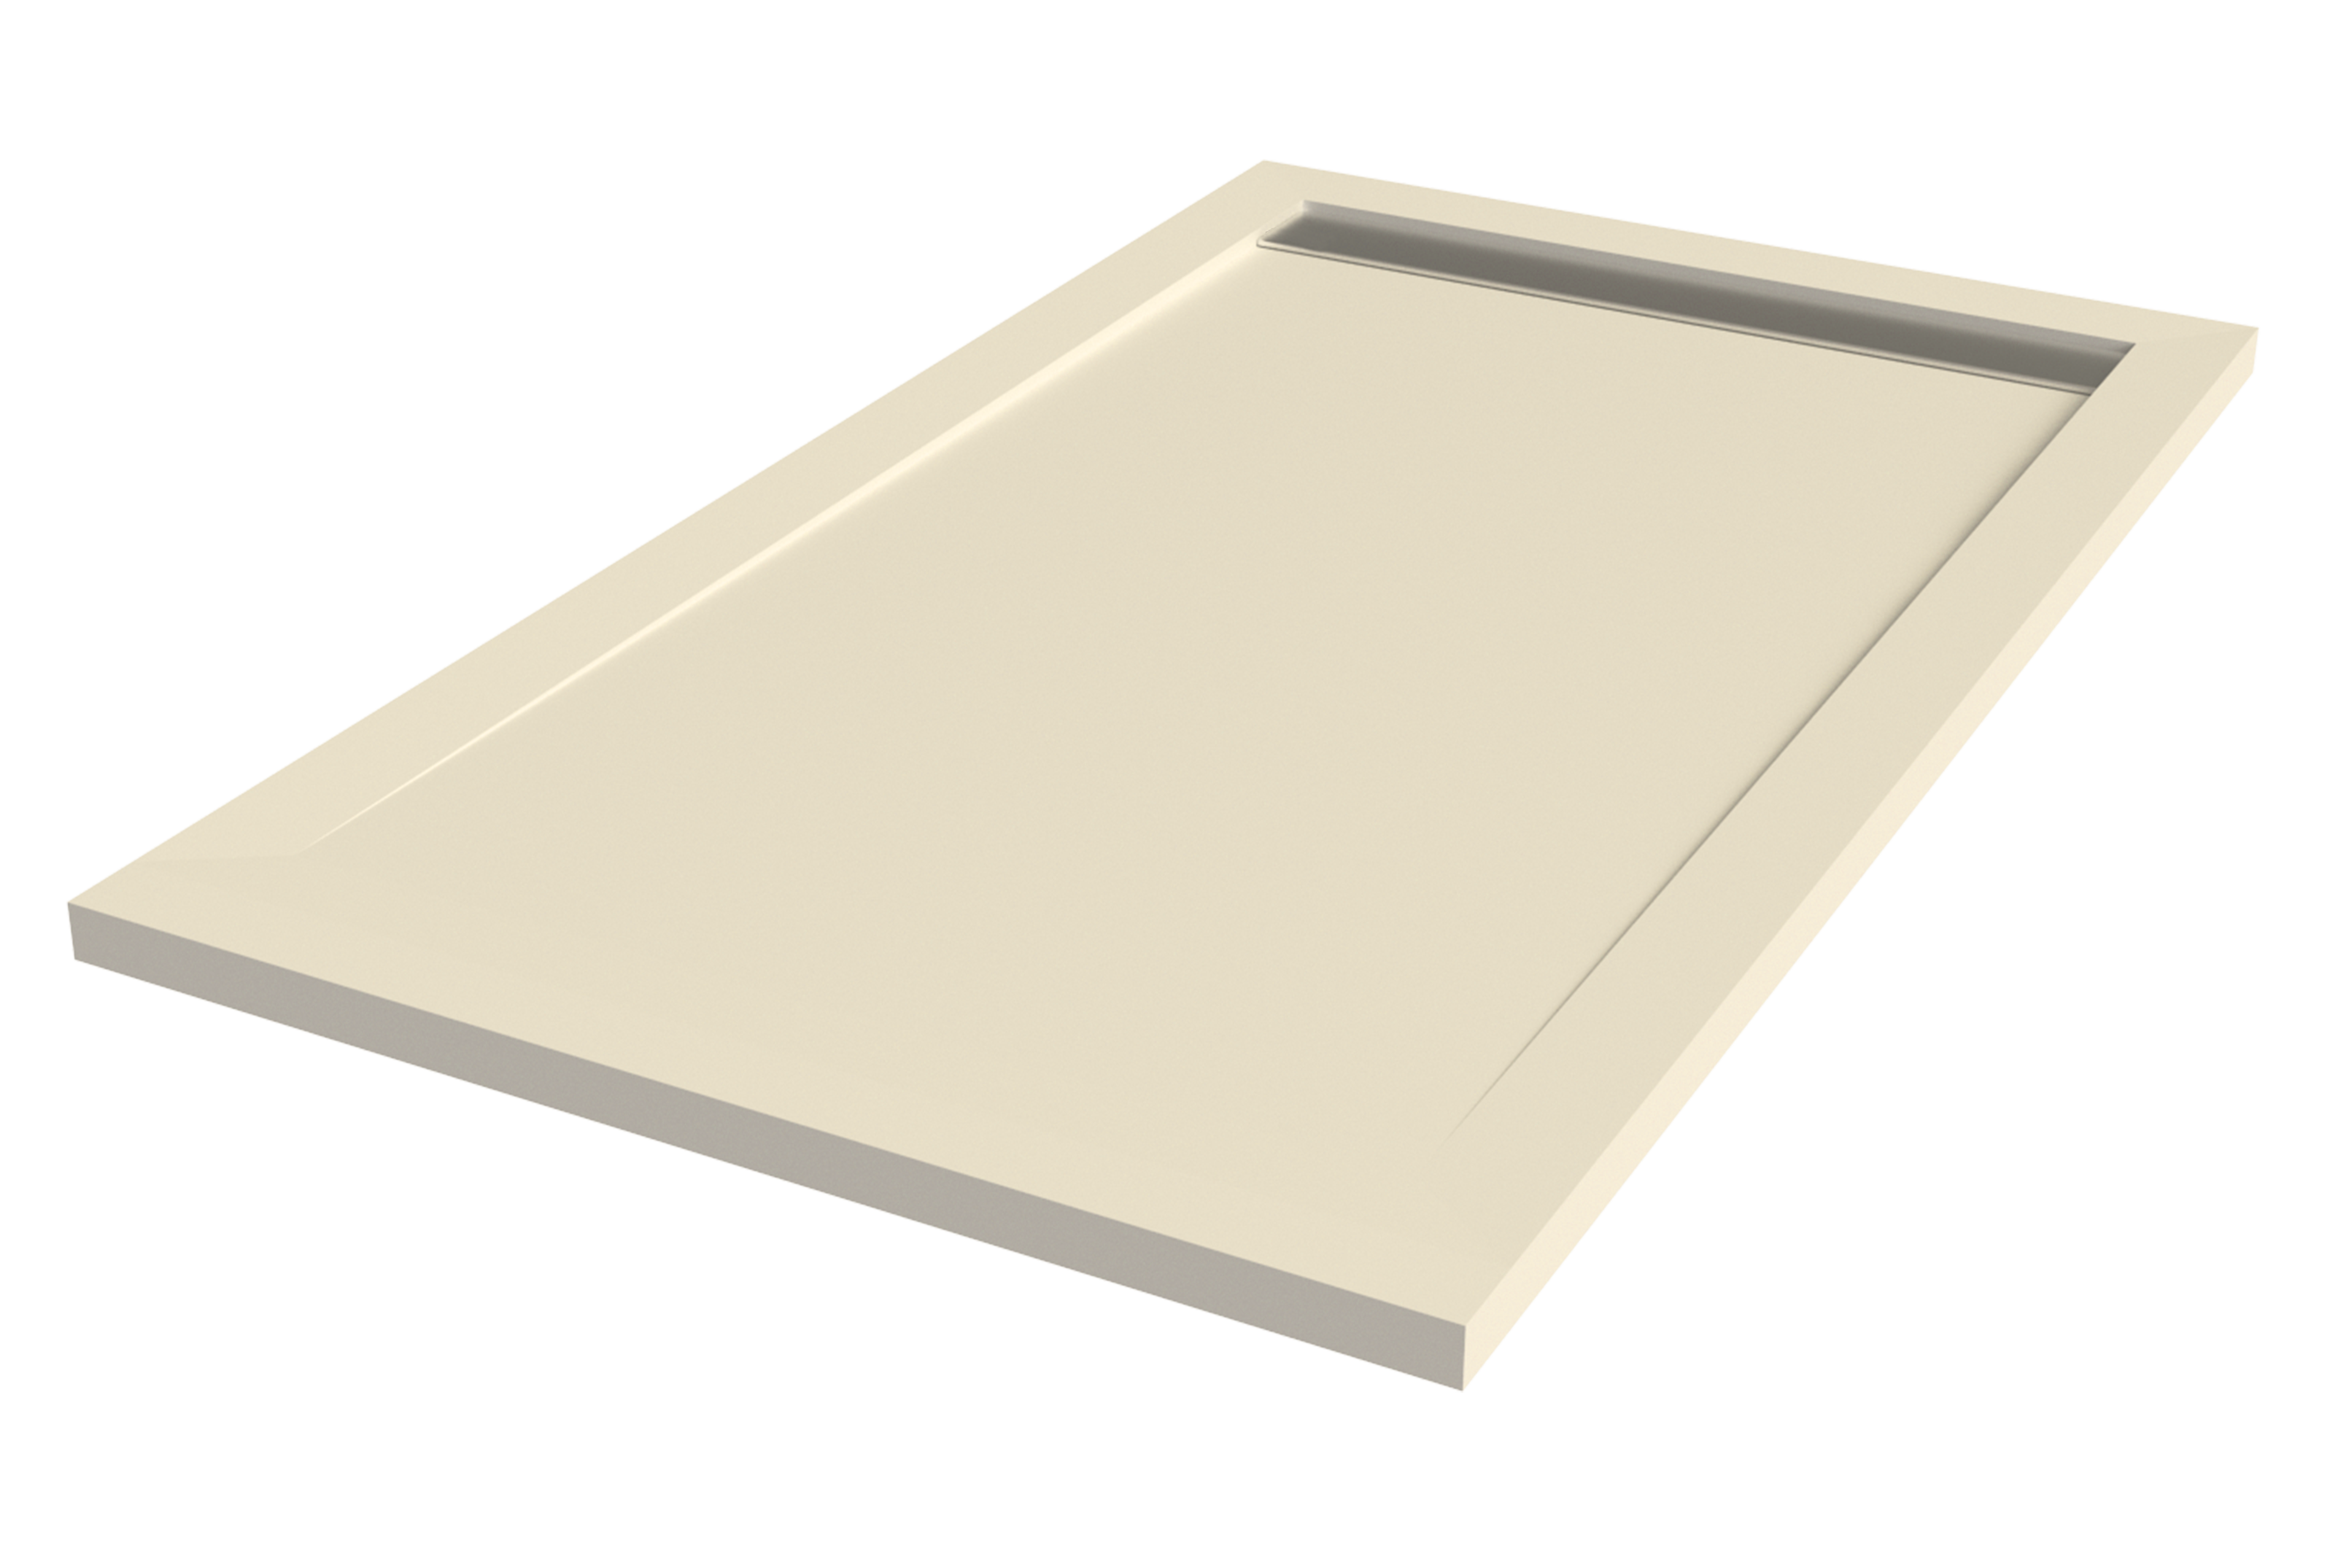 Plato de ducha kaliso 180x70 cm beige